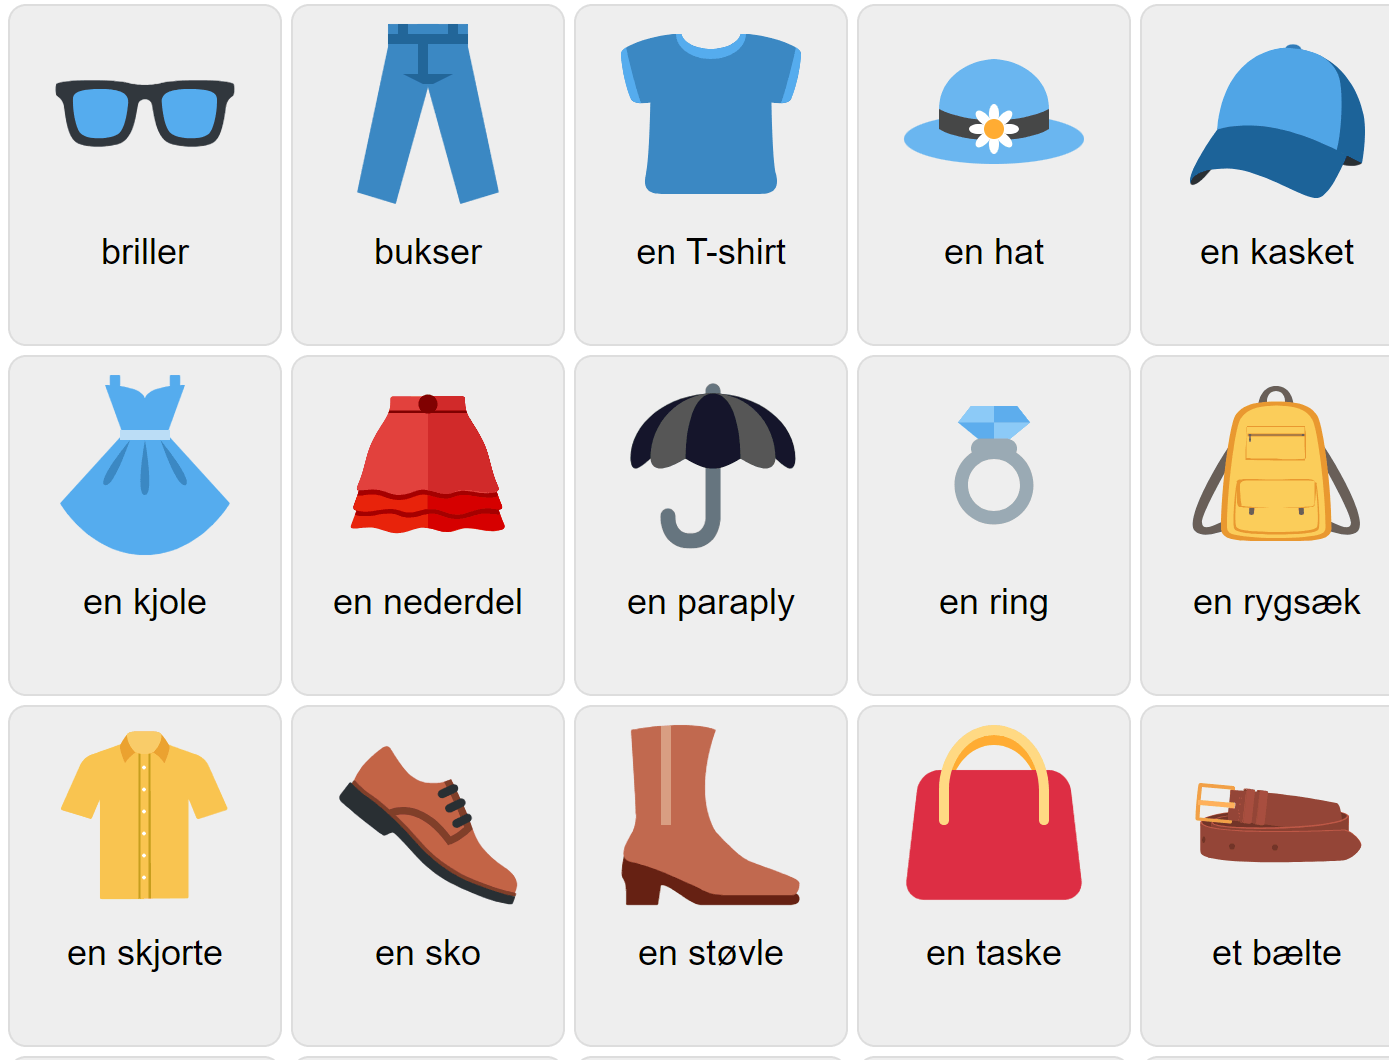 Одежда на датском языке